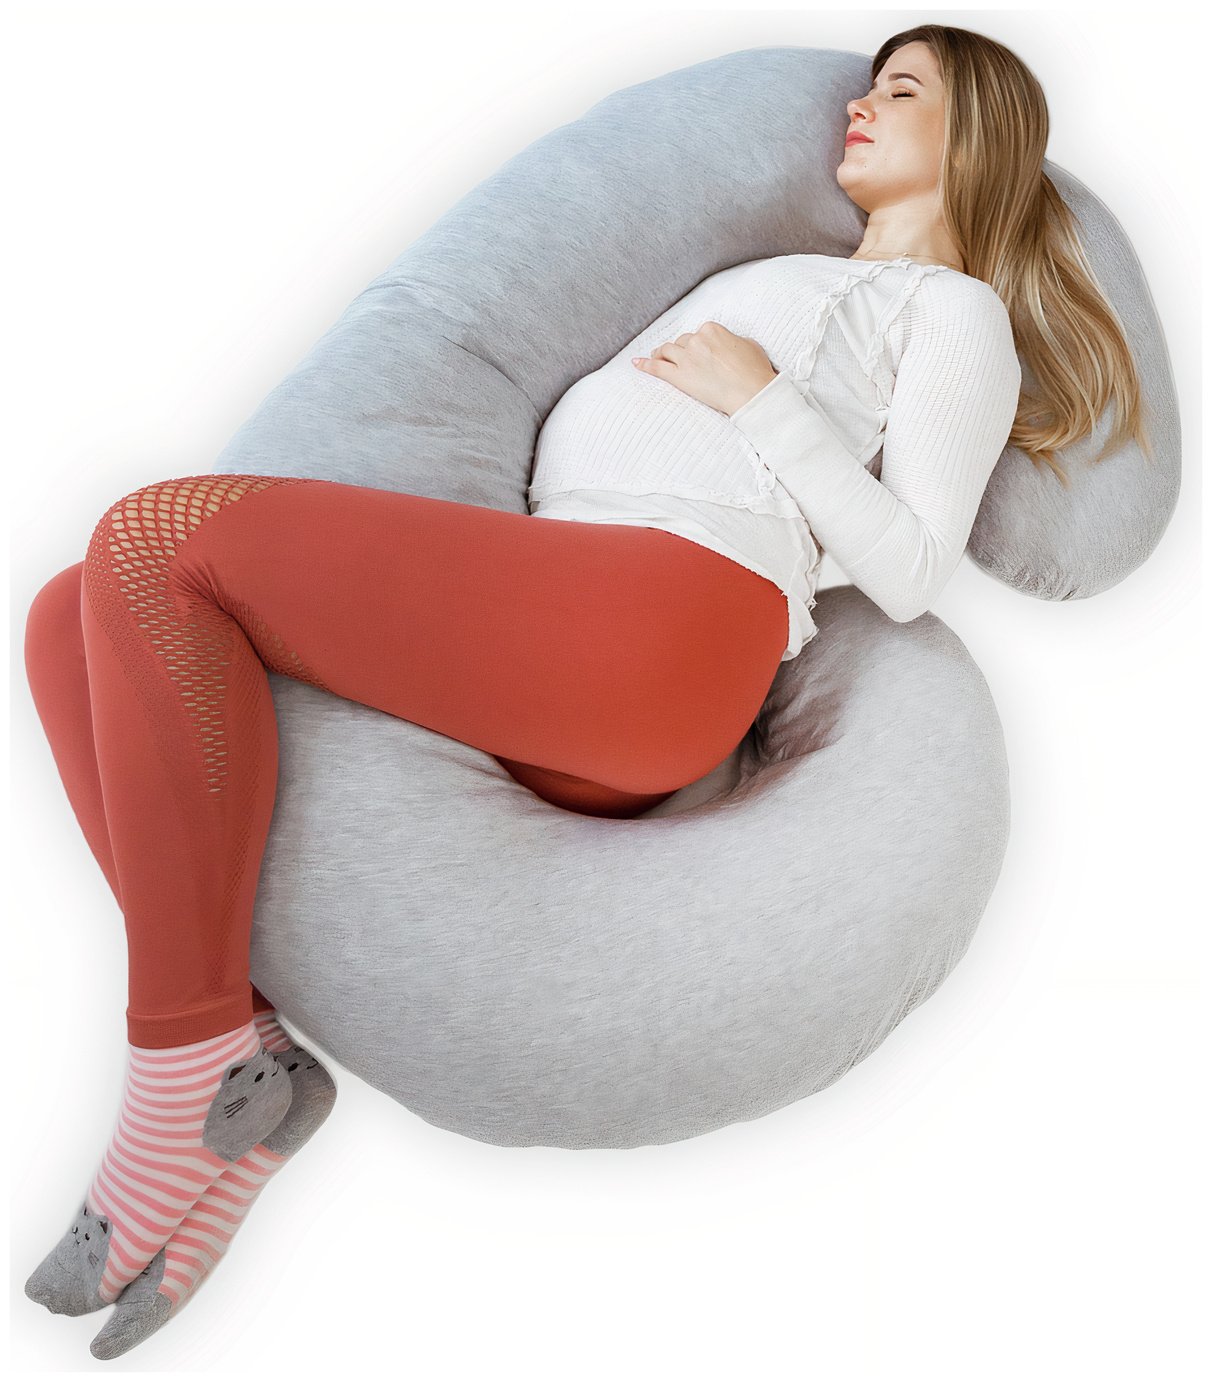 Kolbray C Shape Pregnancy Pillow - Grey